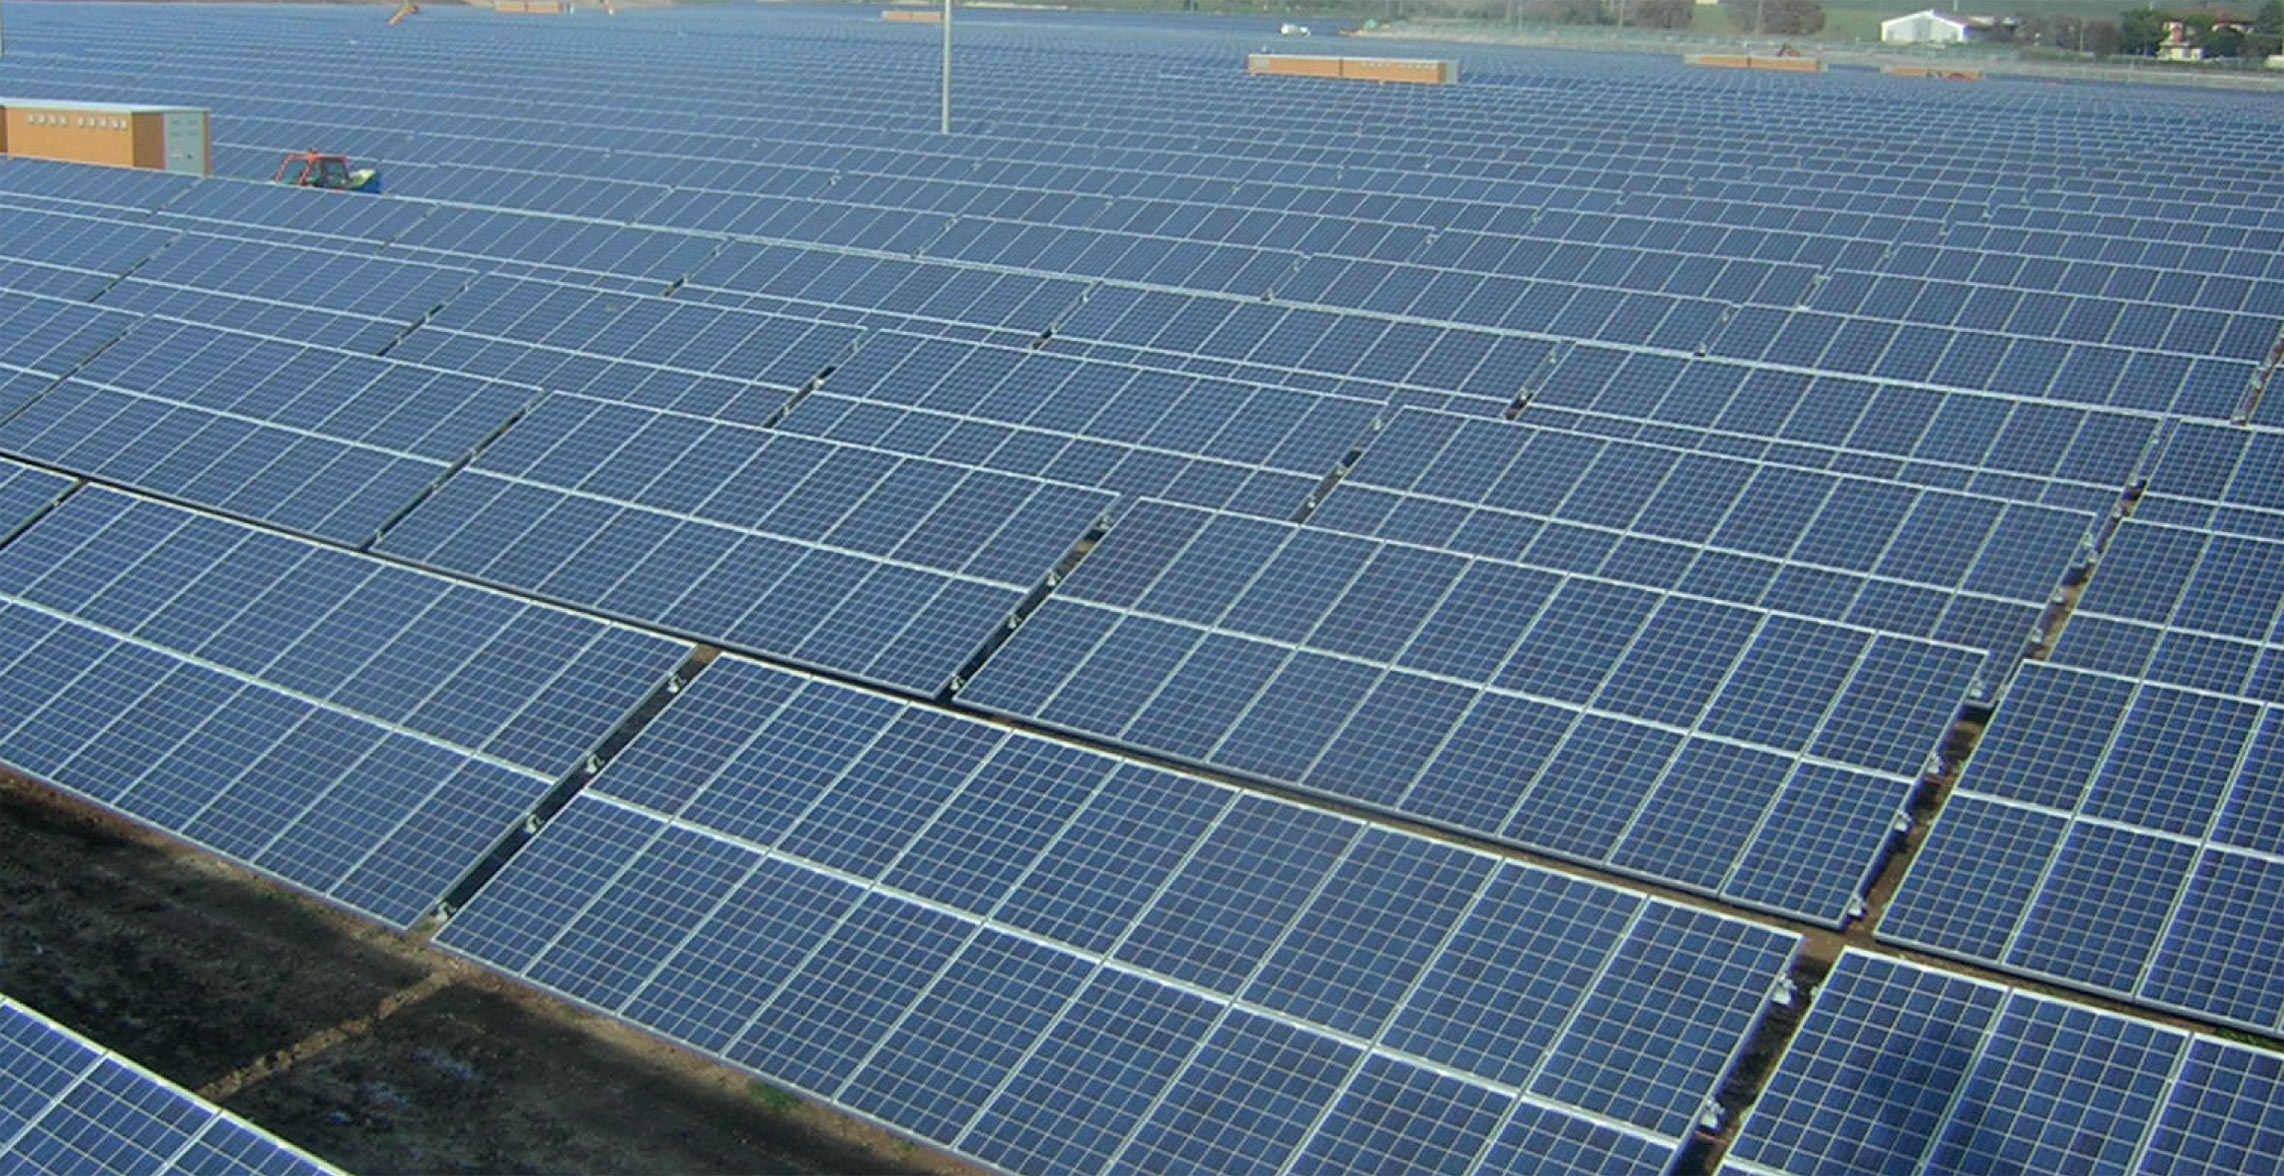 Photovoltaic power plant treia italy turnkey pv